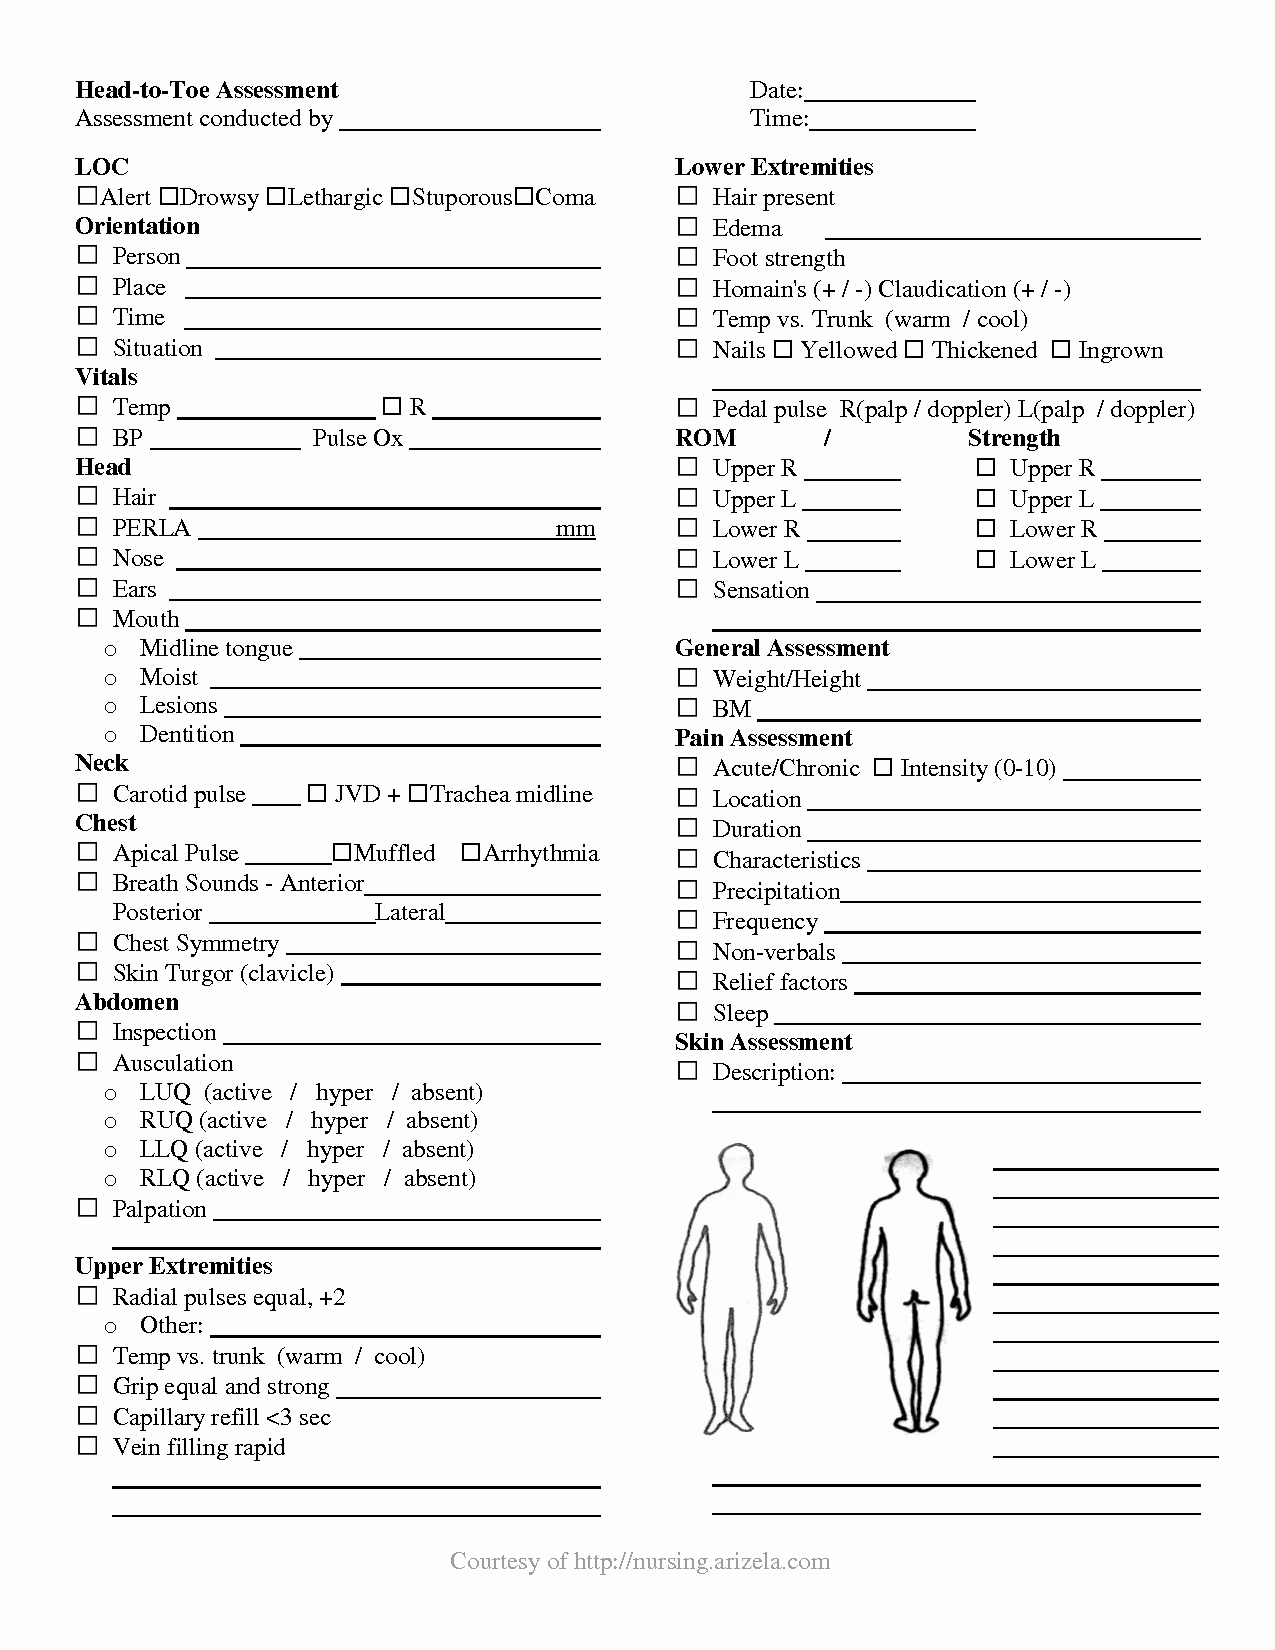 Patient Face Sheet Template Unique Nursing Head to toe assessment Cheat Sheet